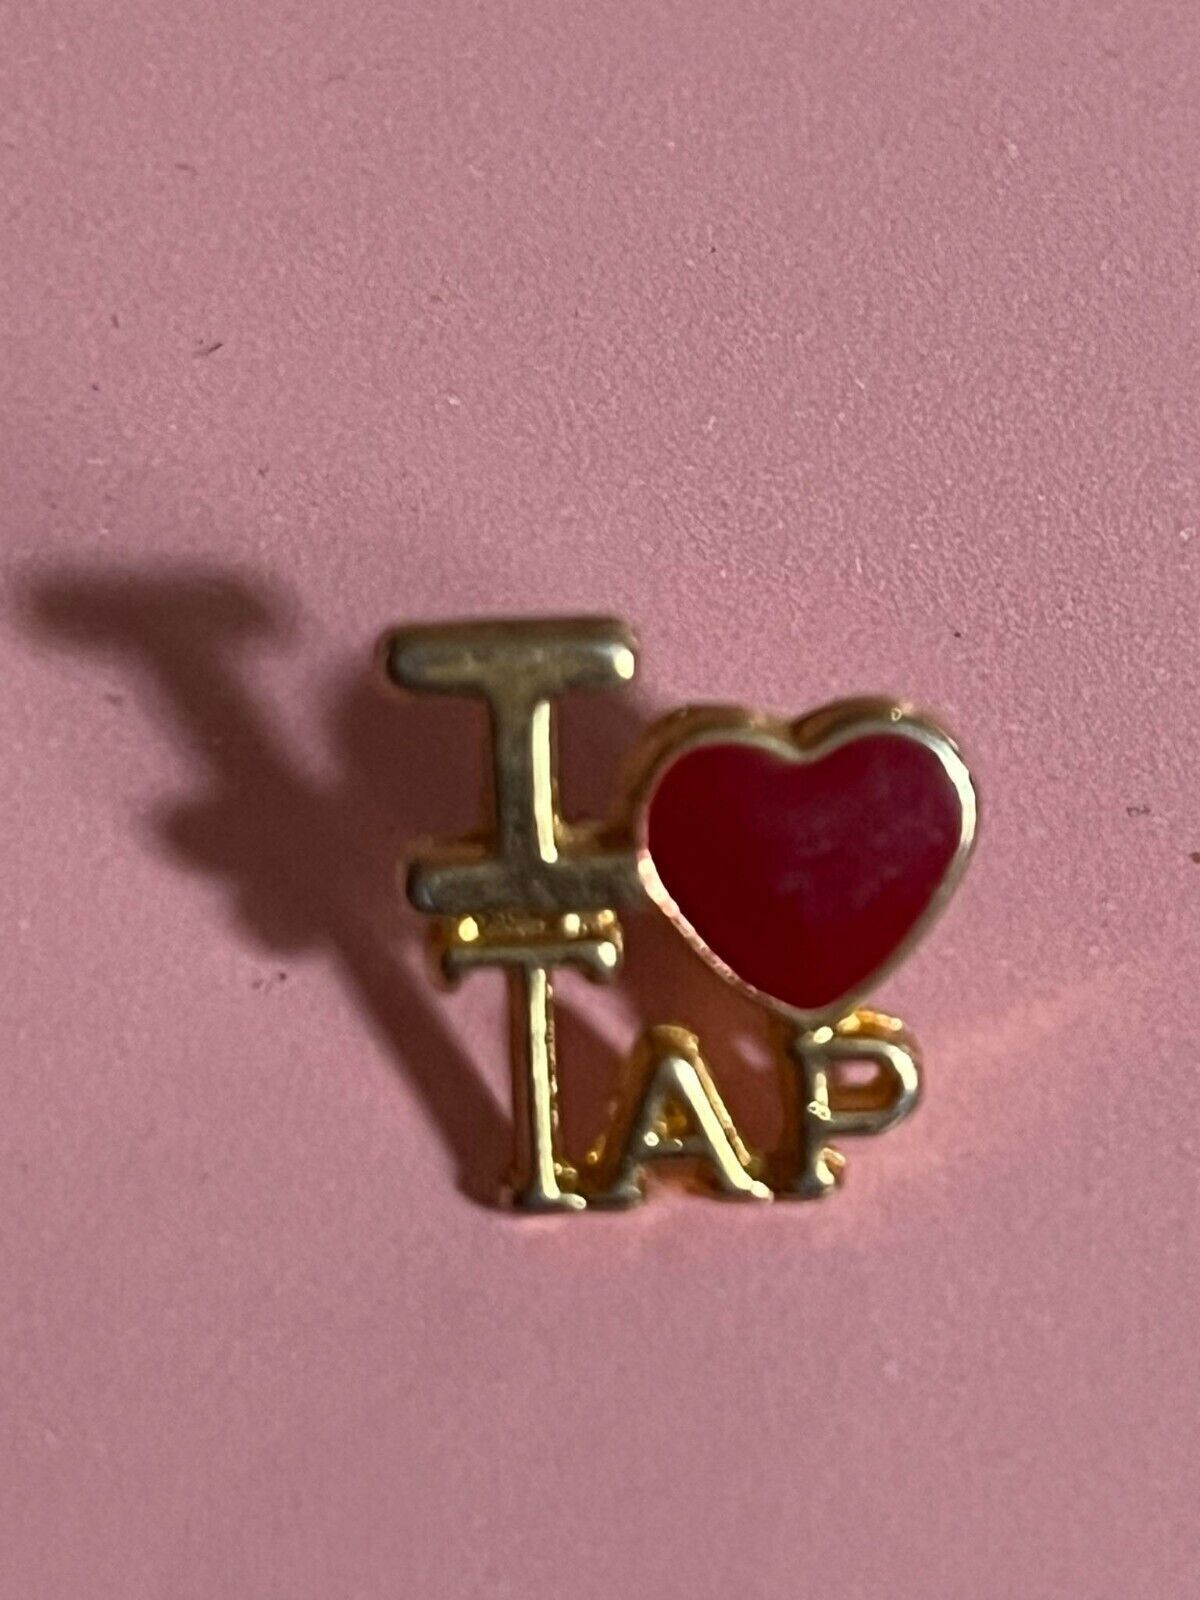 Vintage Lapel Pin #48 I heart tap